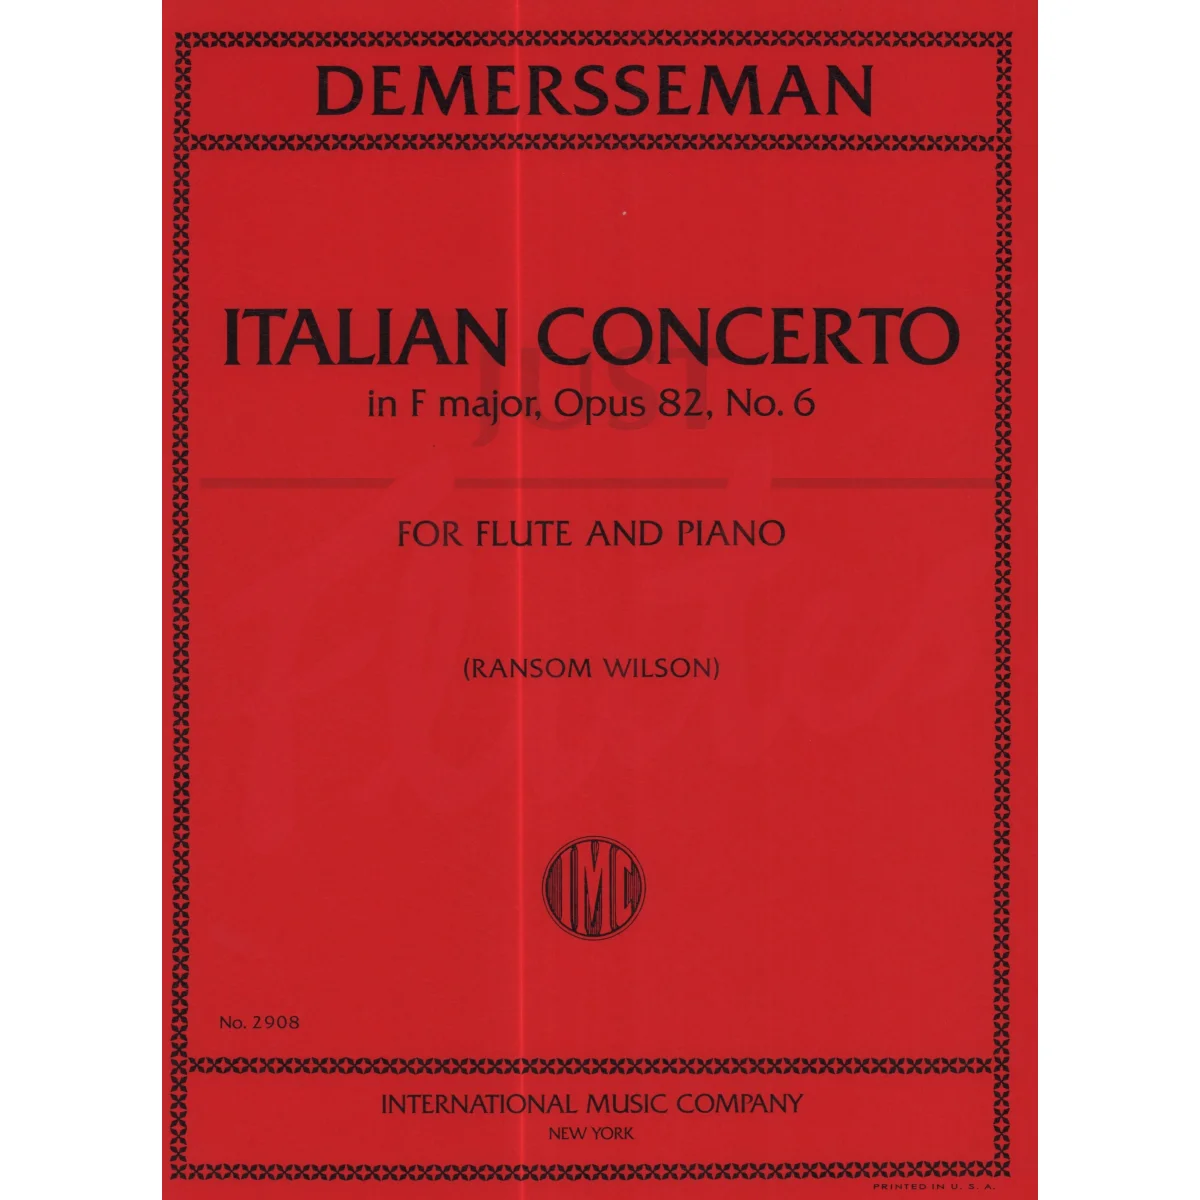 Italian Concerto in F Major for Flute and Piano